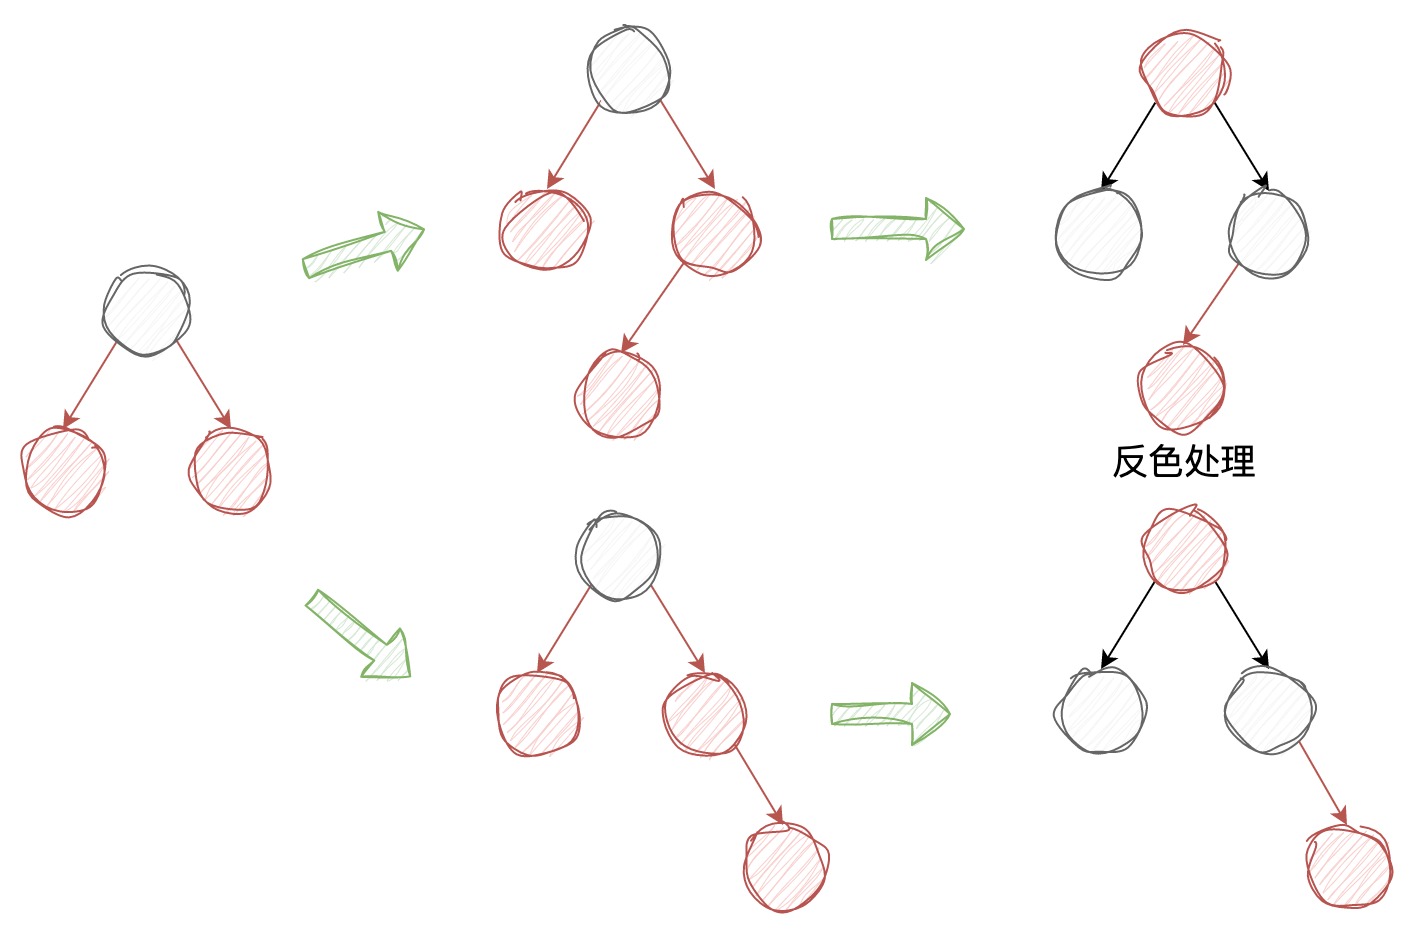 深入理解经典红黑树 | 京东物流技术团队